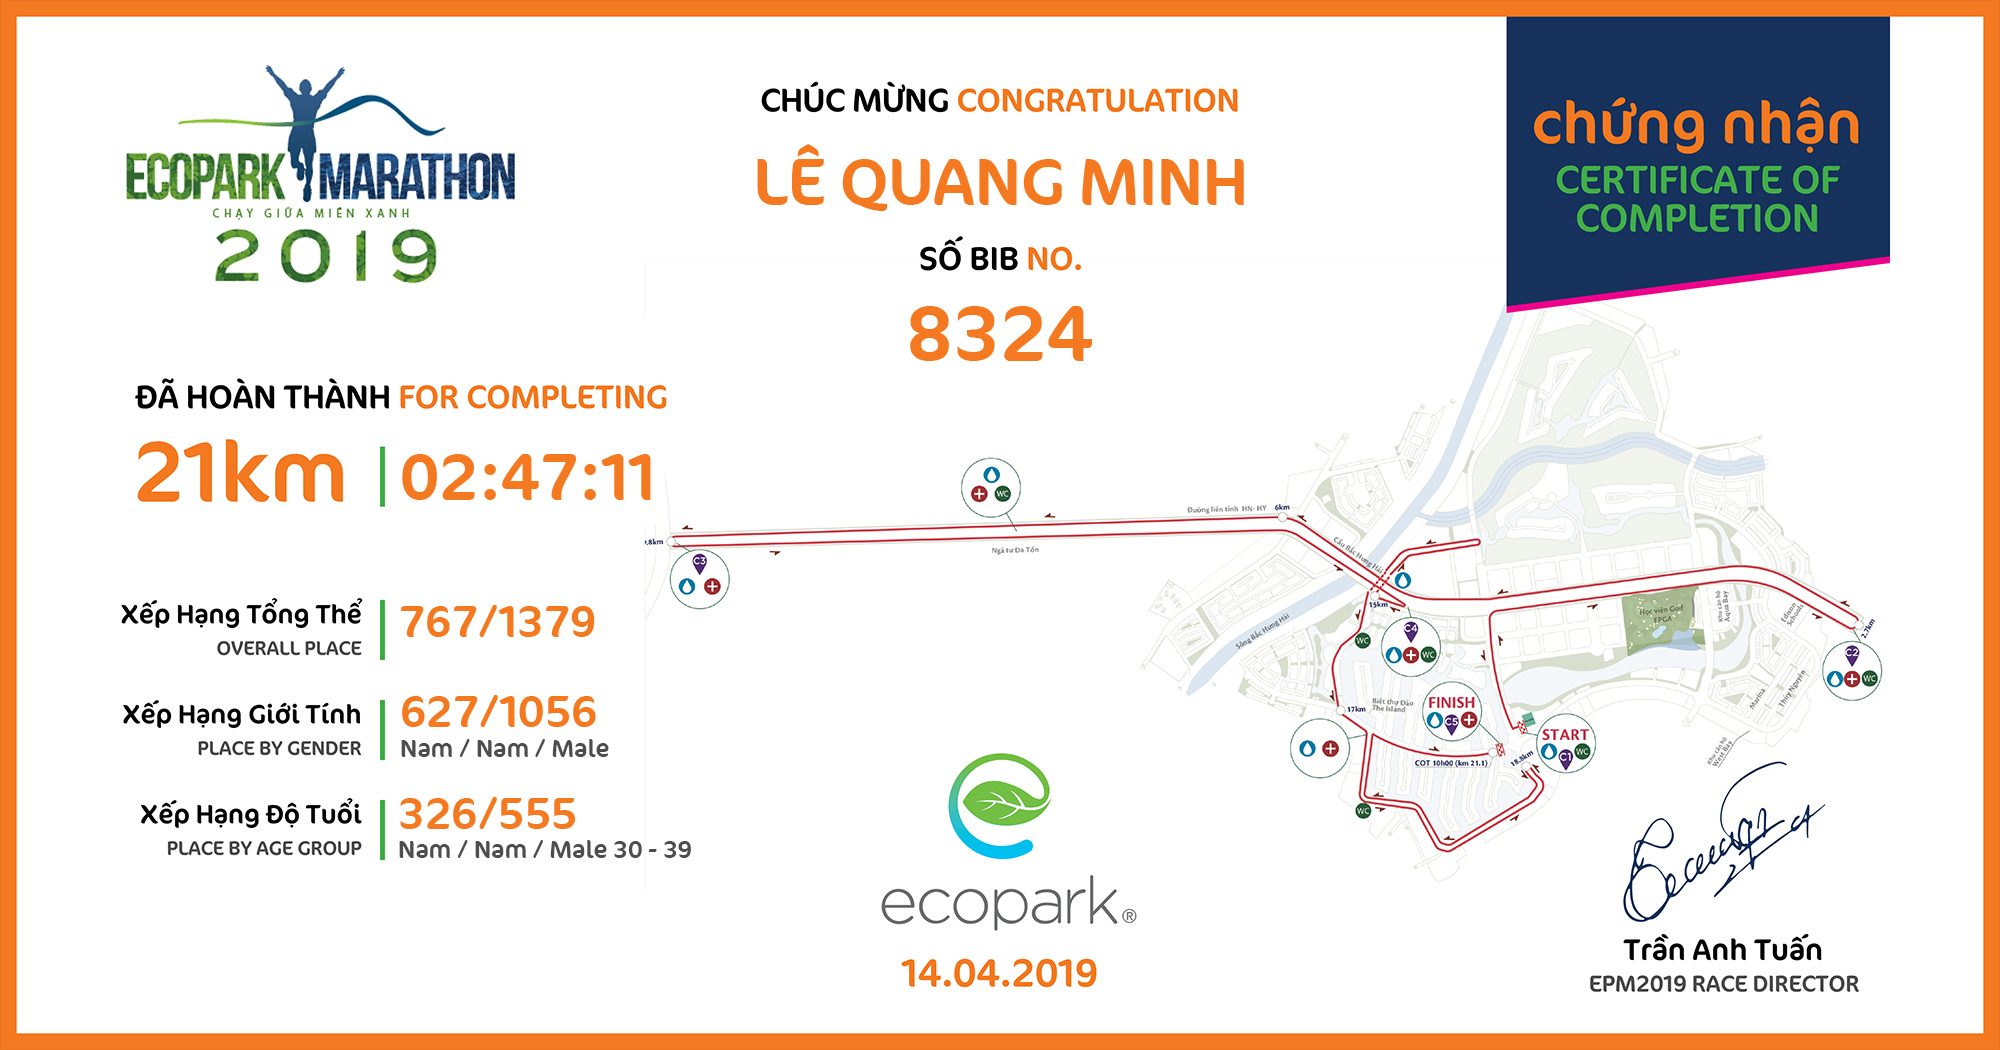 8324 - Lê Quang Minh